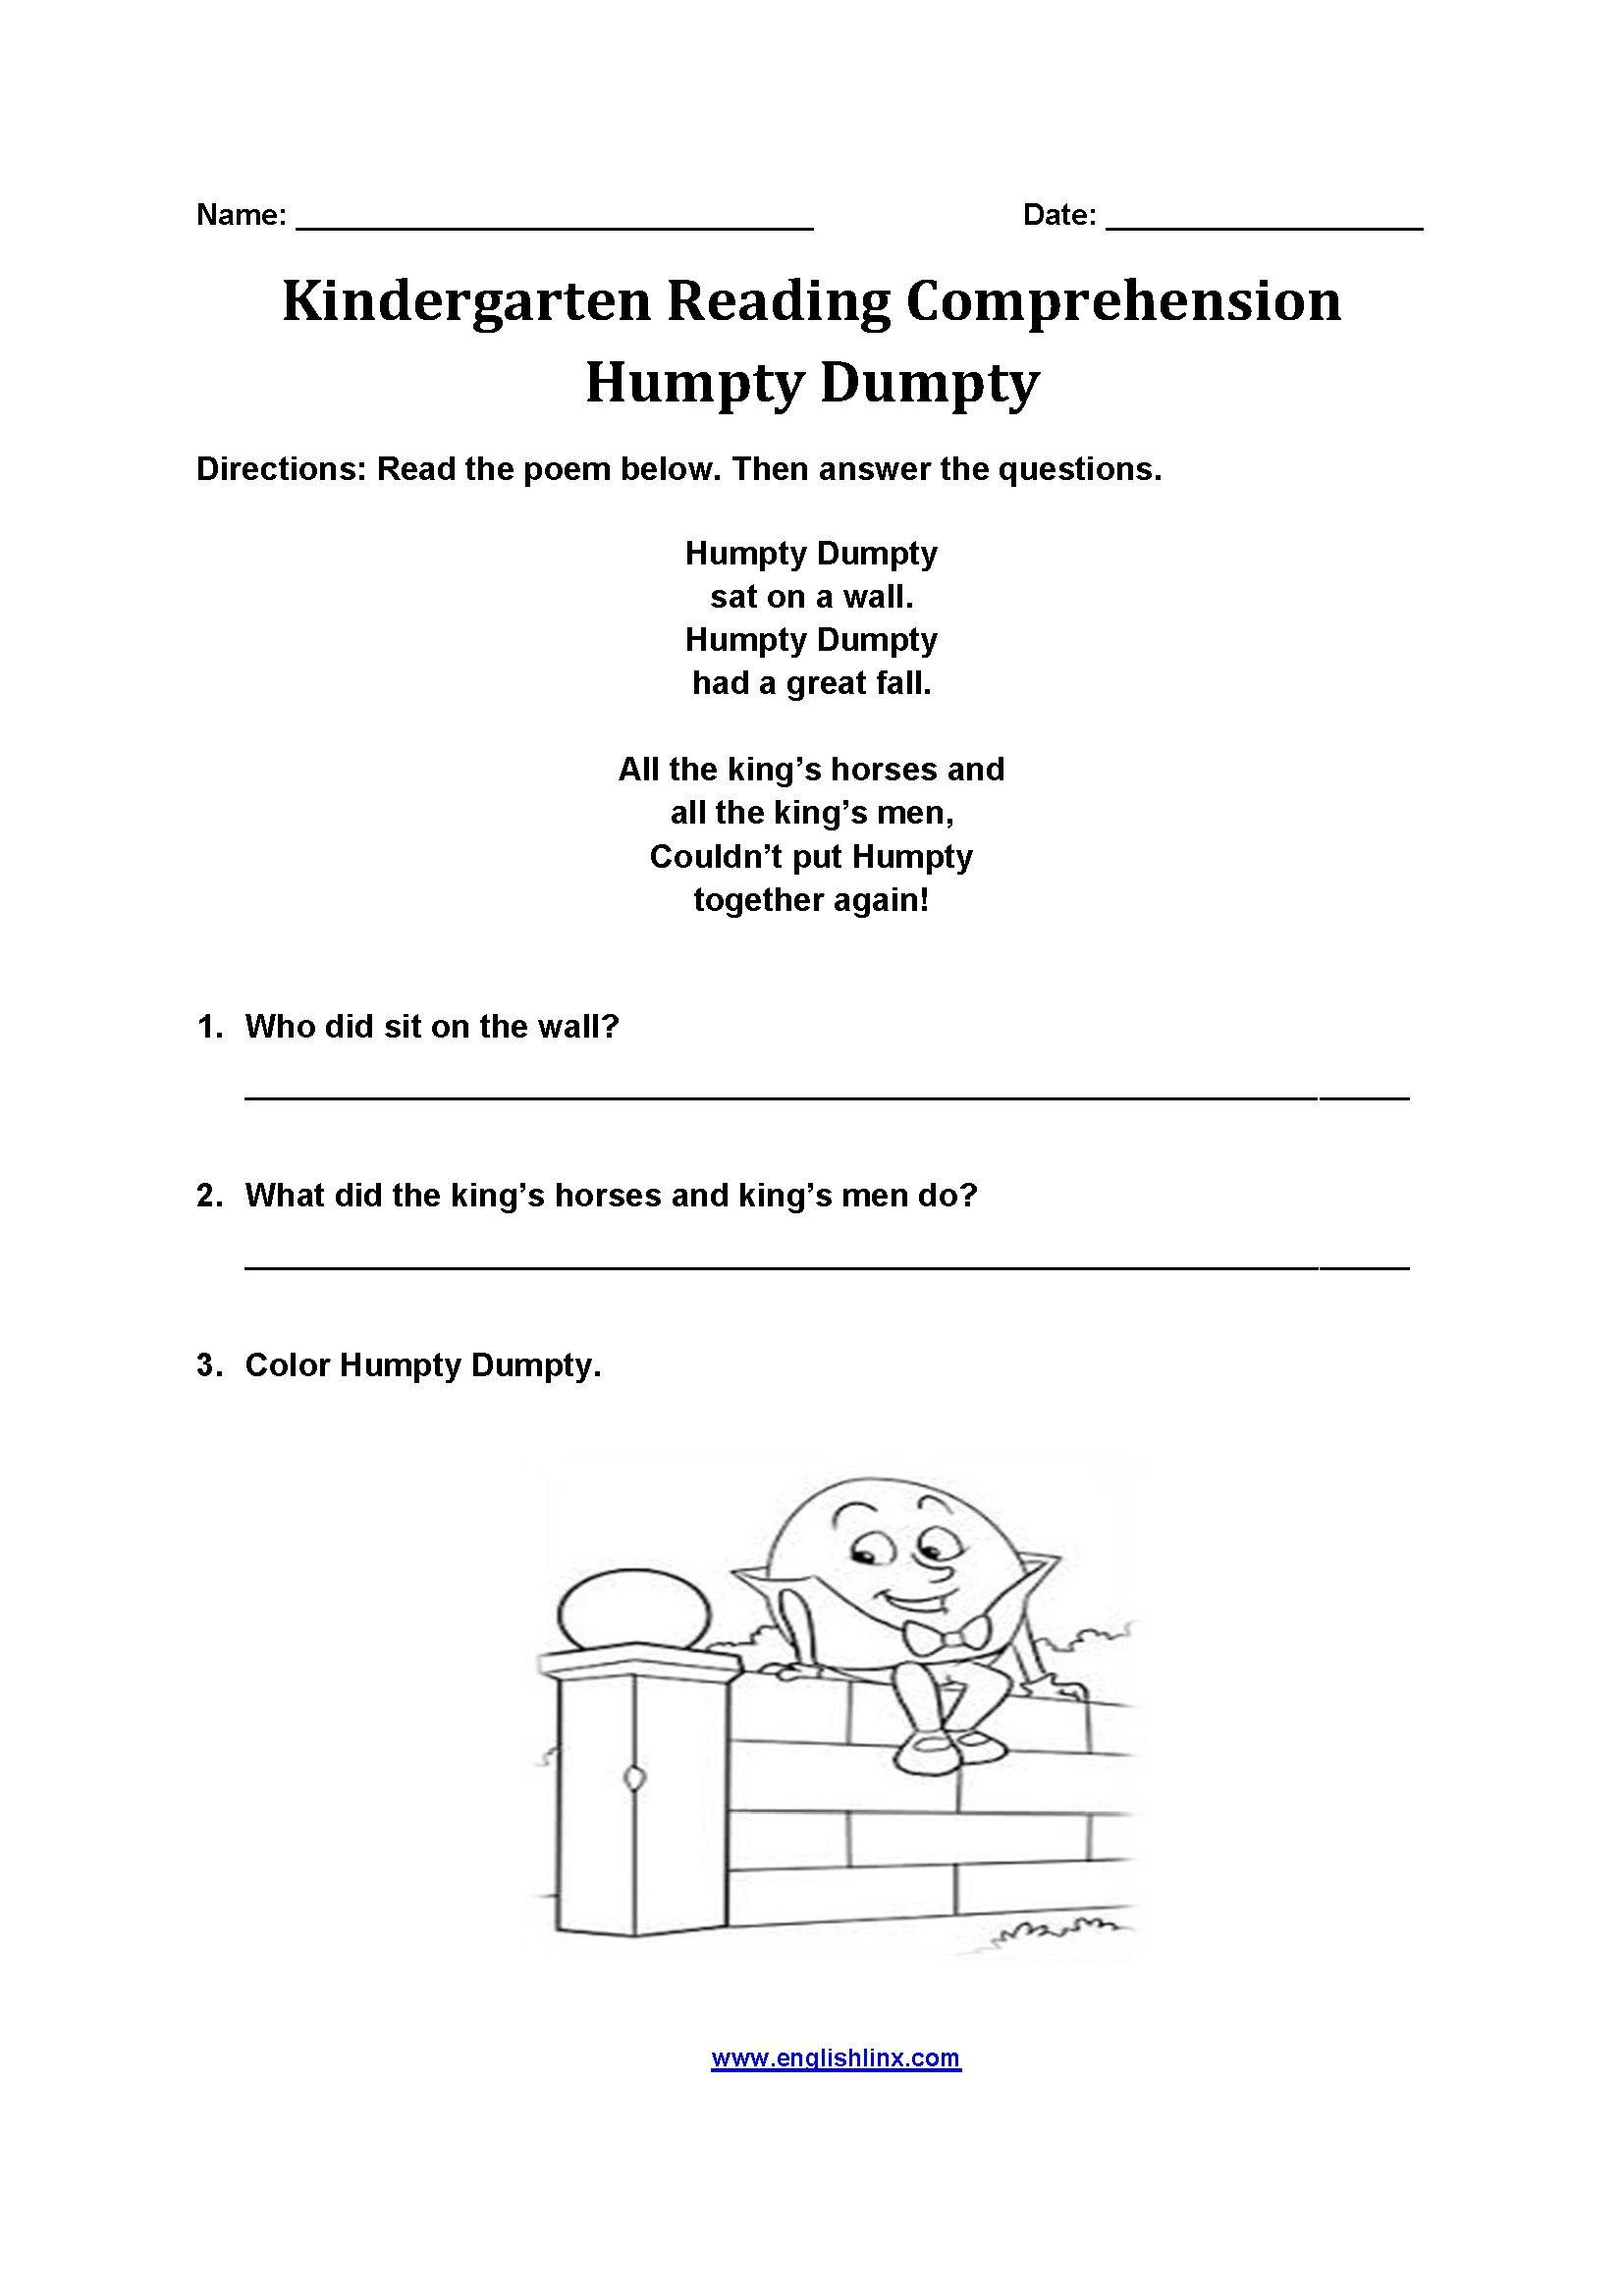 Humpty Dumpty Kindergarten Reading Comprehension Worksheets